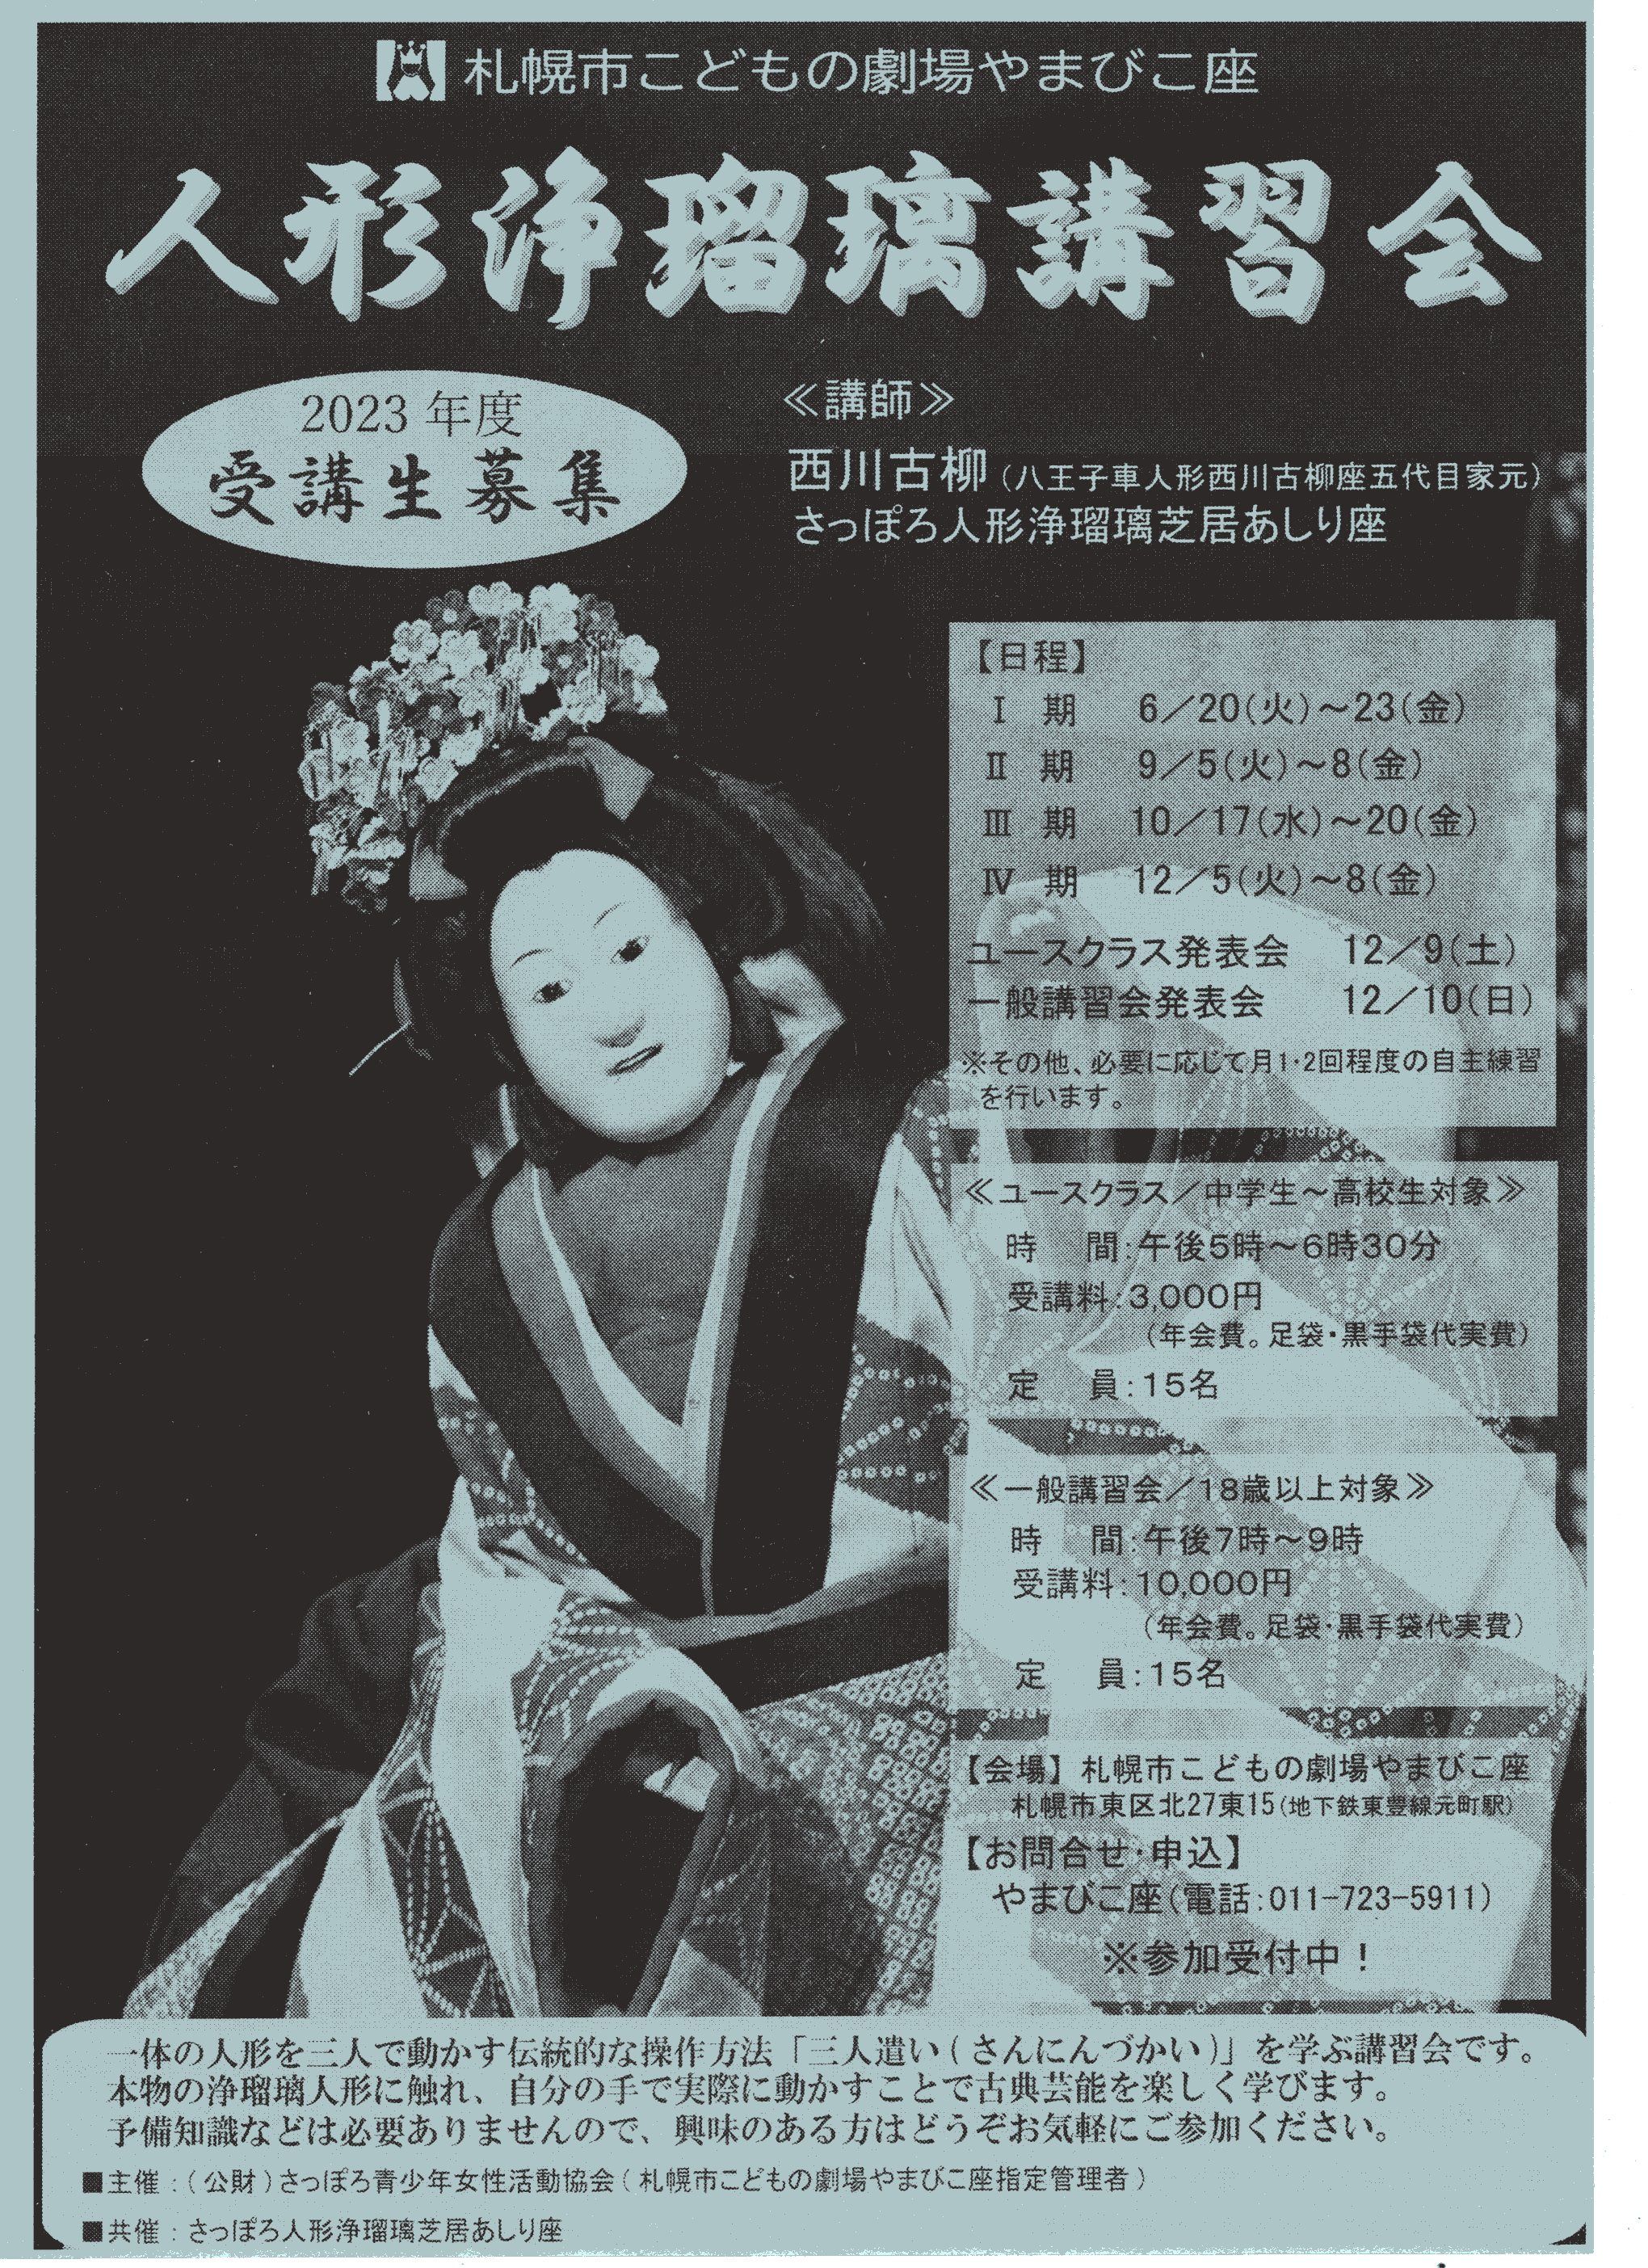 札幌市こどもの劇場やまびこ座「人形浄瑠璃講習会」2023年度受講生募集